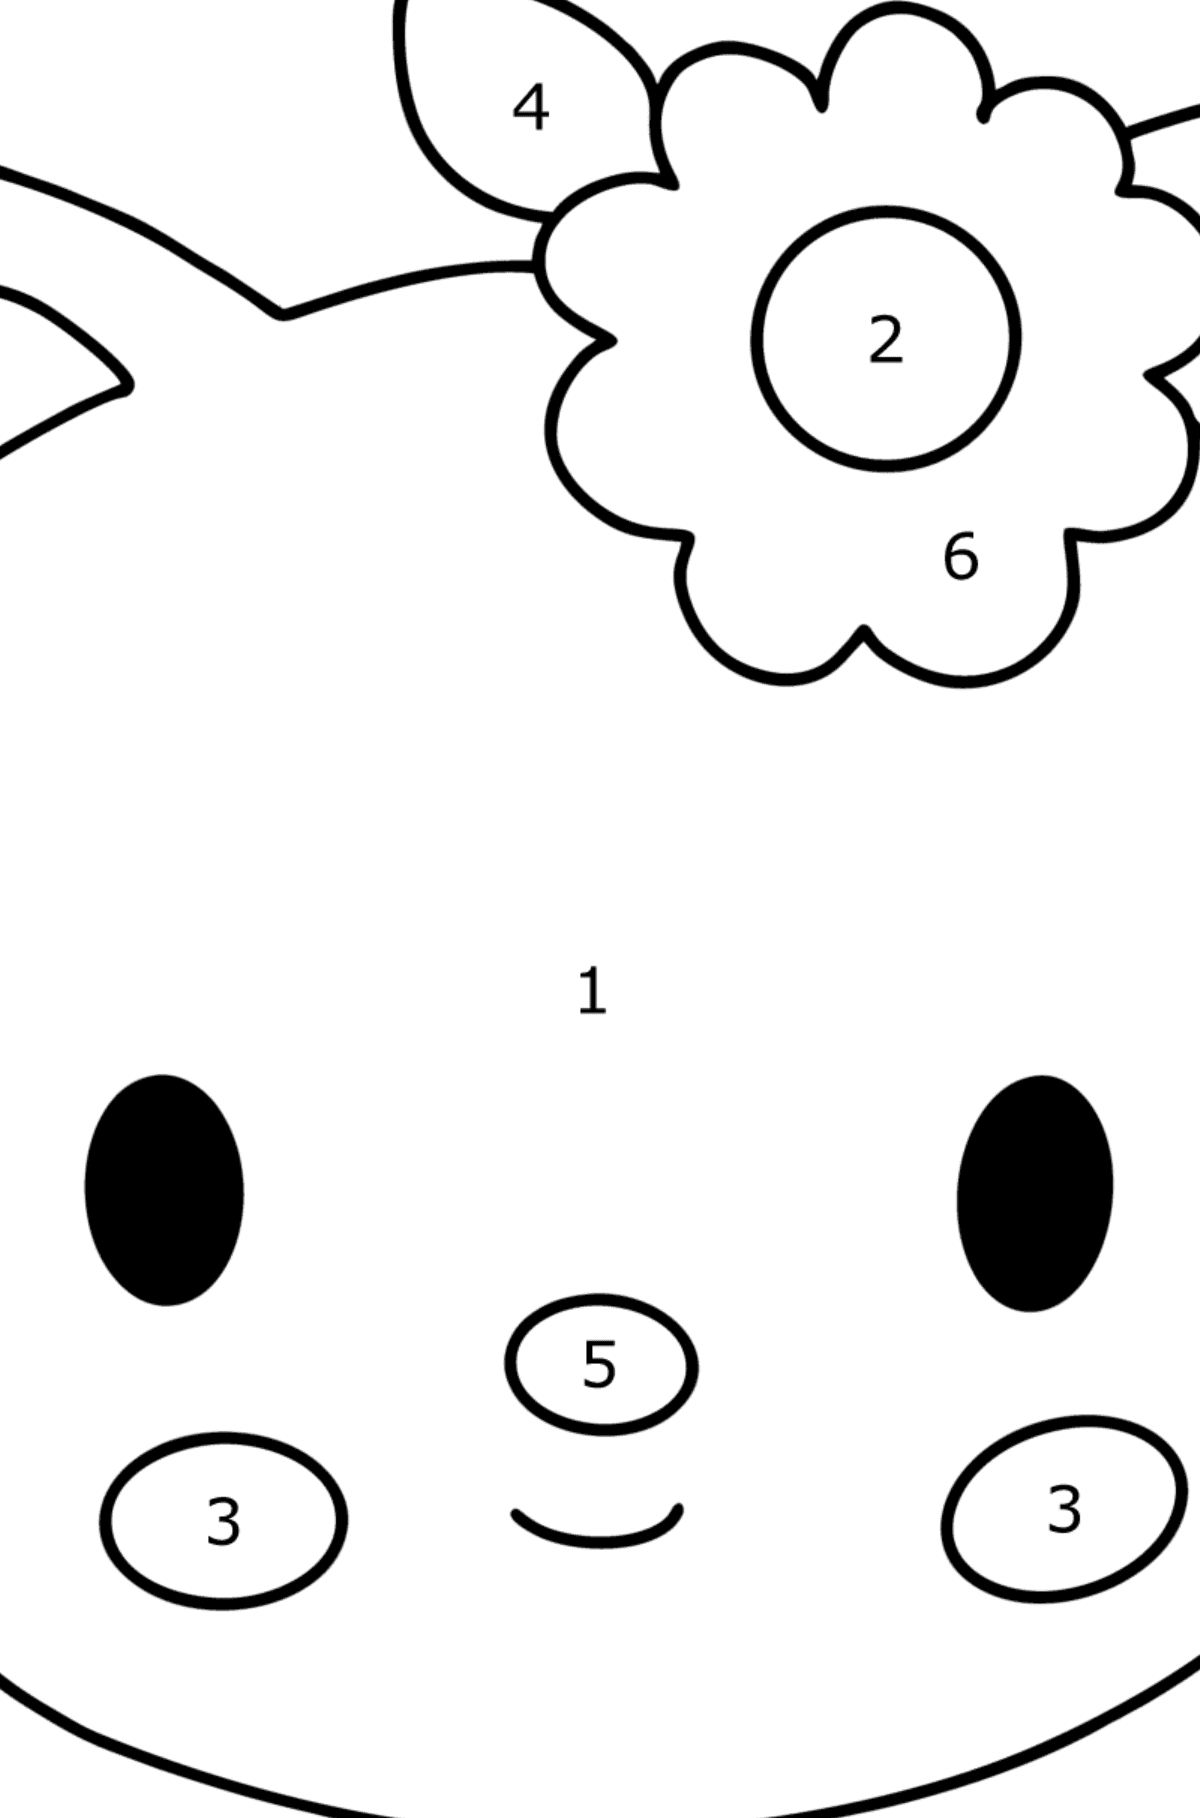 Boyama sayfası Hello Kitty ağızlık - Sayılarla Boyama çocuklar için